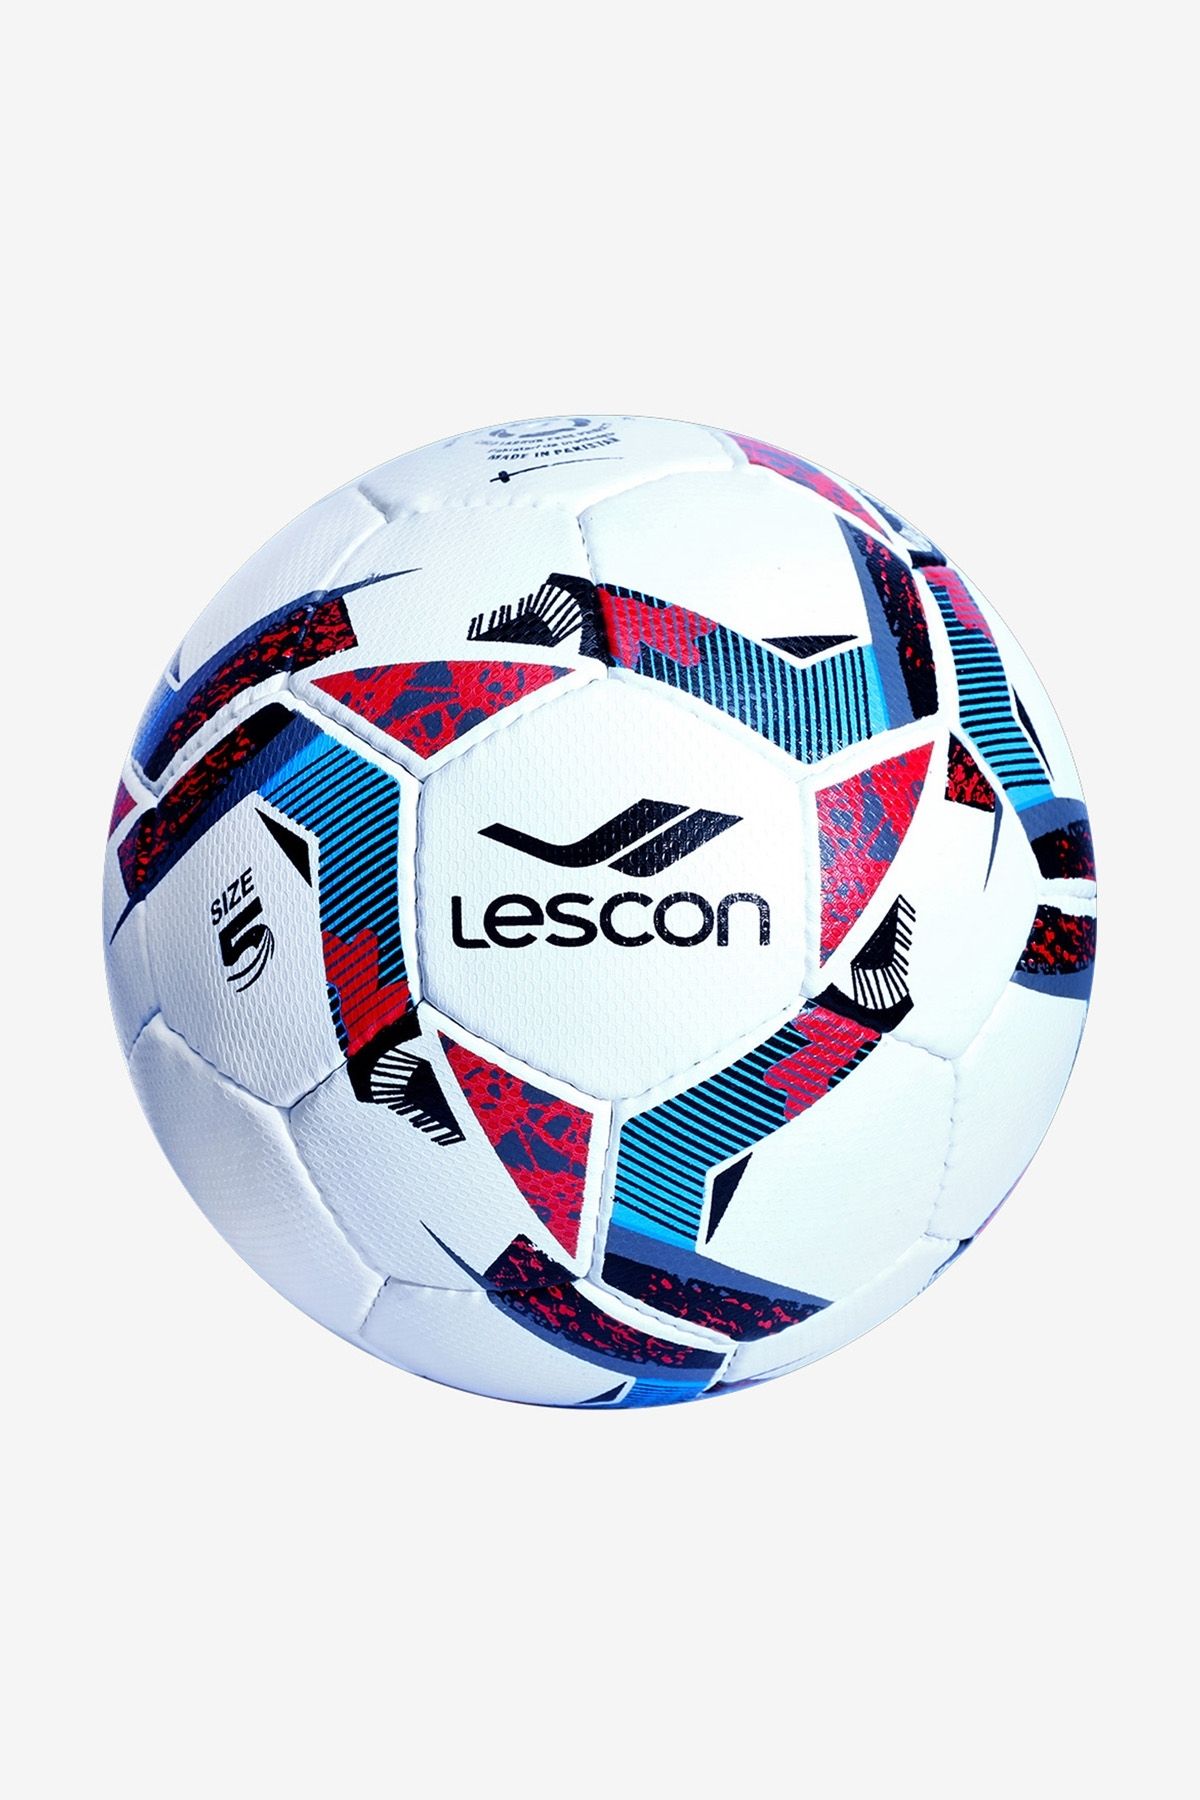 Lescon La-3533 5 Numara Beyaz Futbol Topu.